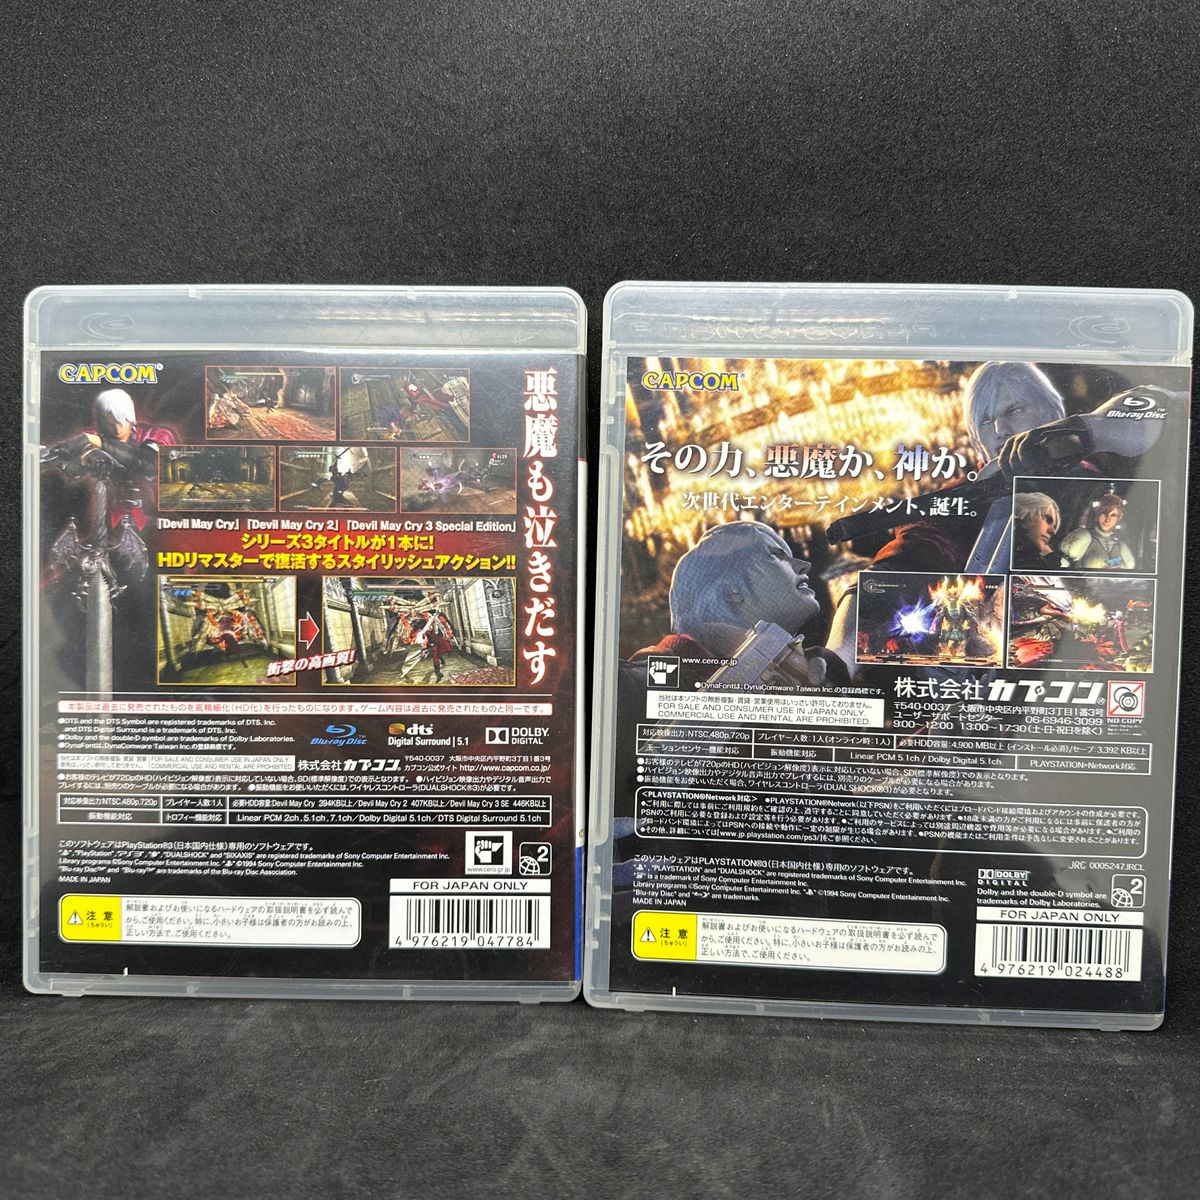 【PS3】 デビル メイ クライ HDコレクション [Best Price！］デビルメイクライ4 2本セット